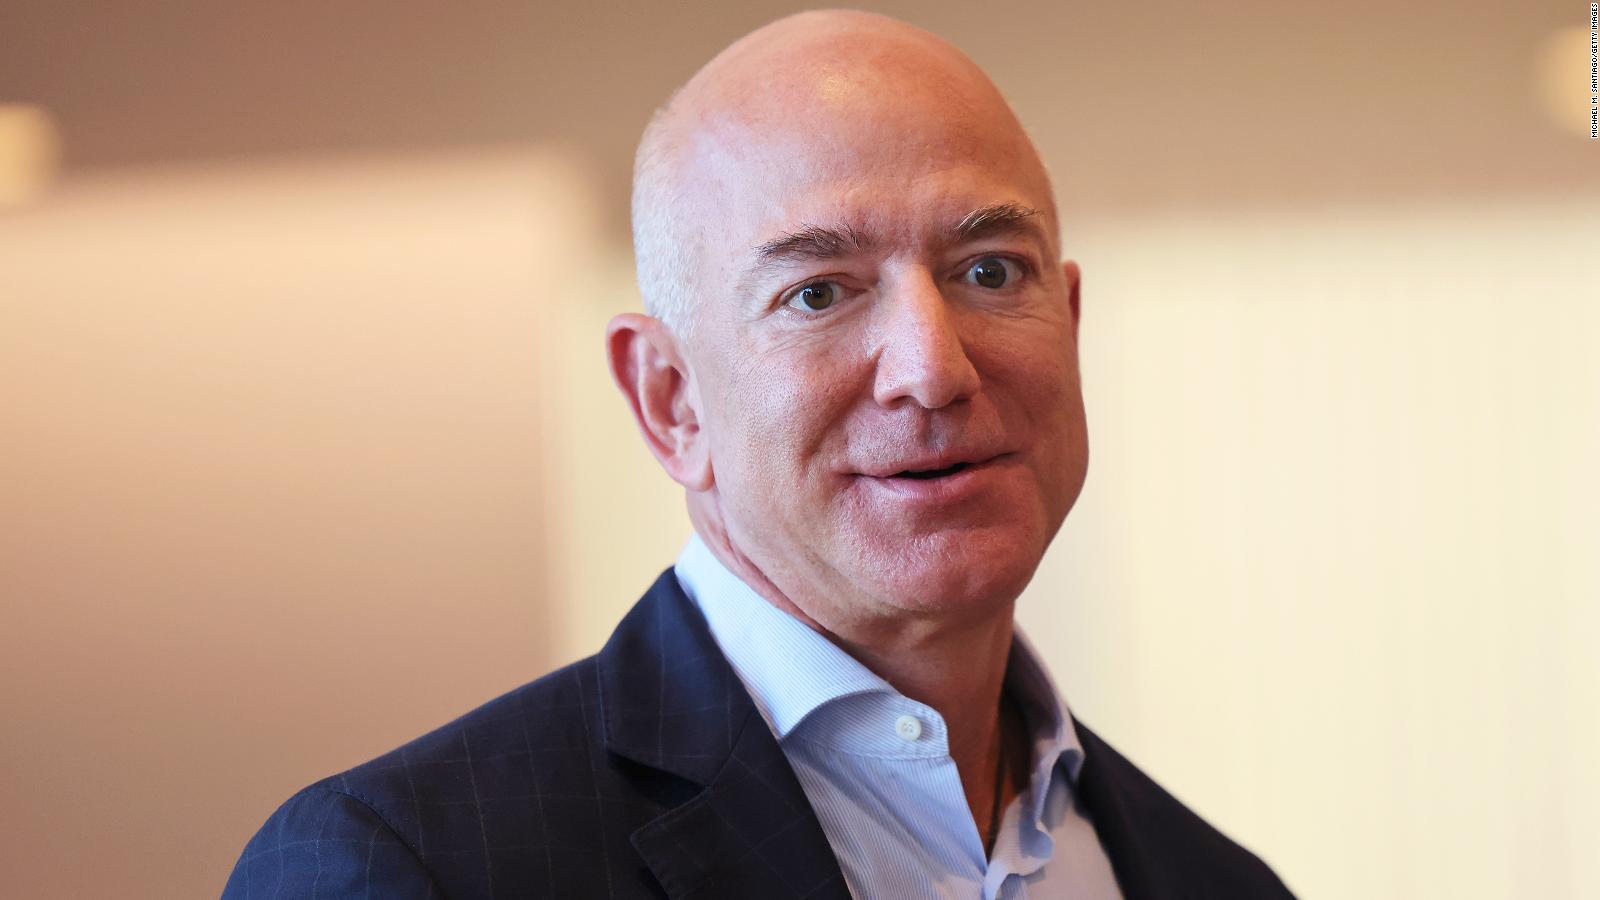 La segunda persona más rica del mundo ya no es Jeff Bezos | Video